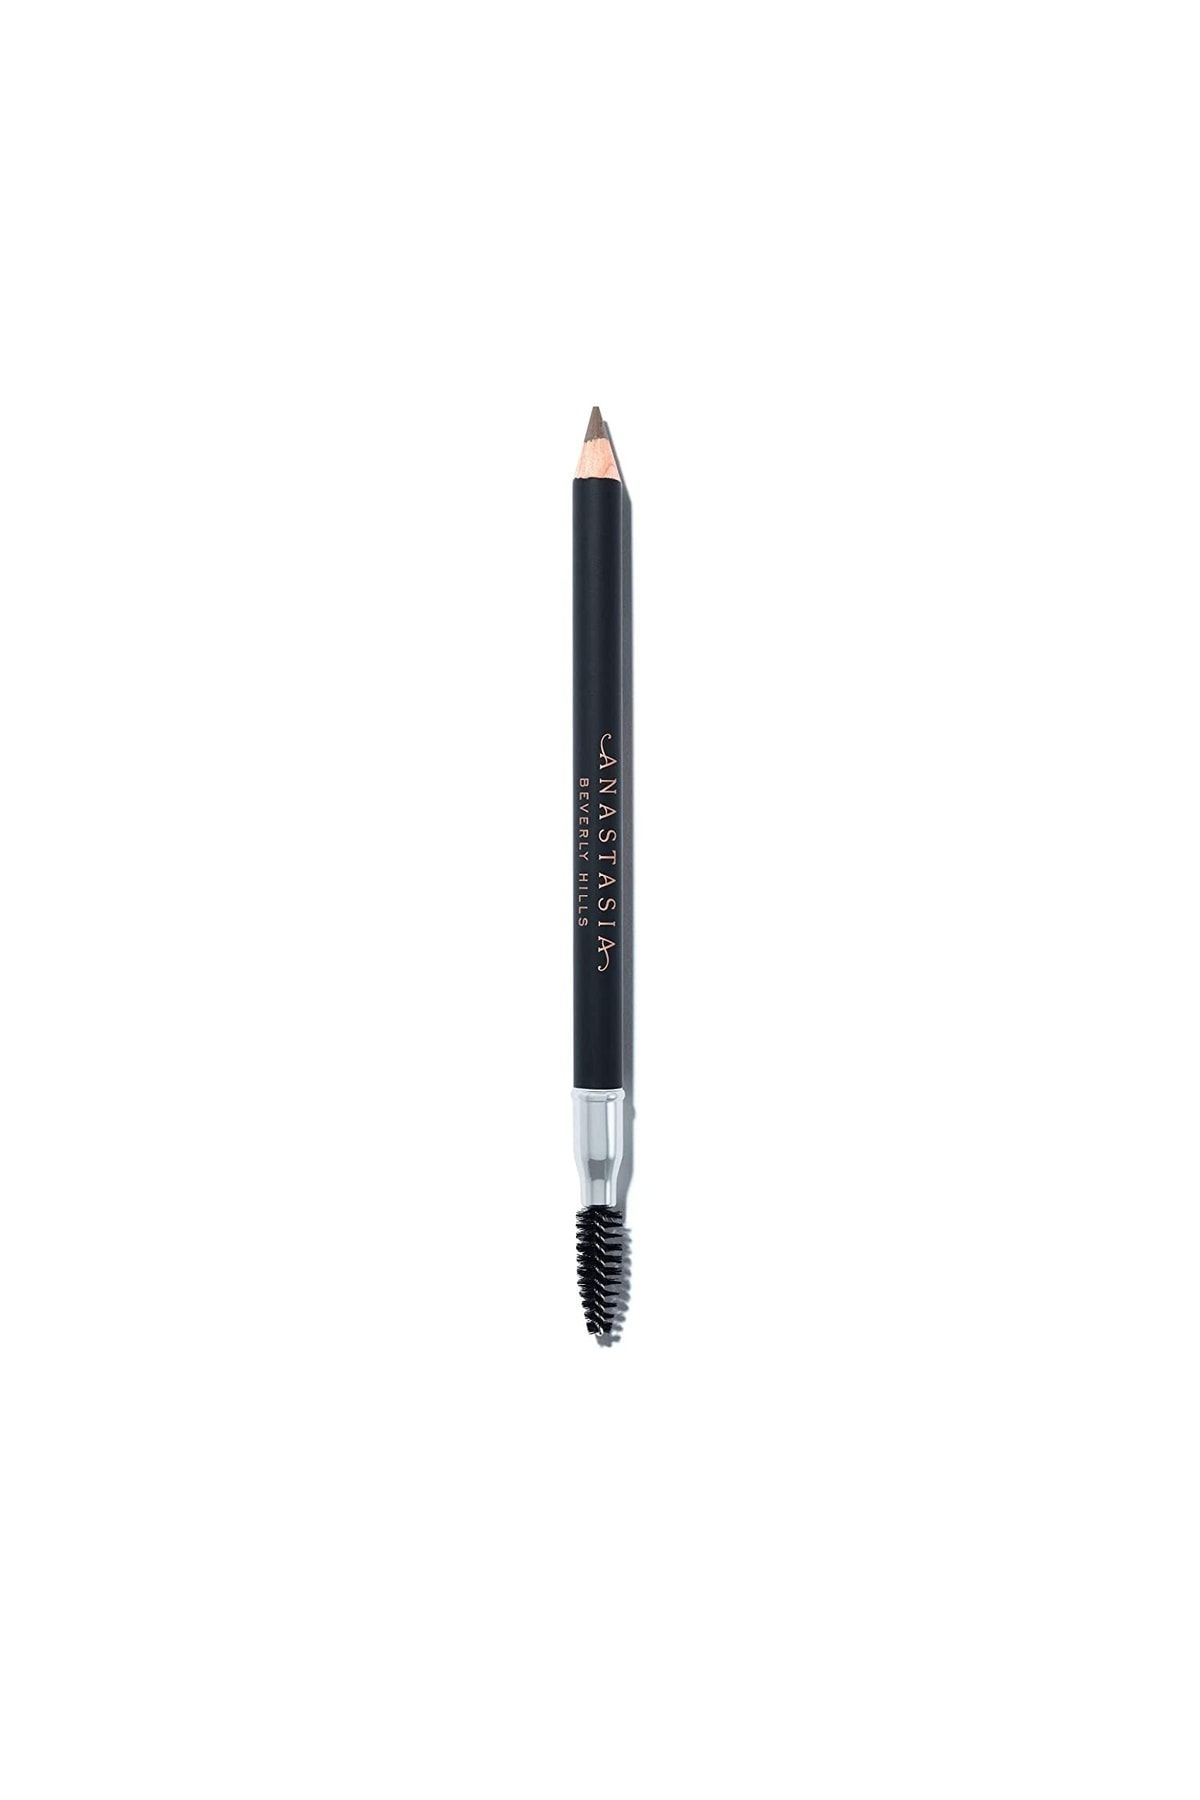 Anastasia Beverly Hills Perfect Brow Pencil Dolgunlaştırıcı Belirginleştirici Kaş Kalemi Blonde